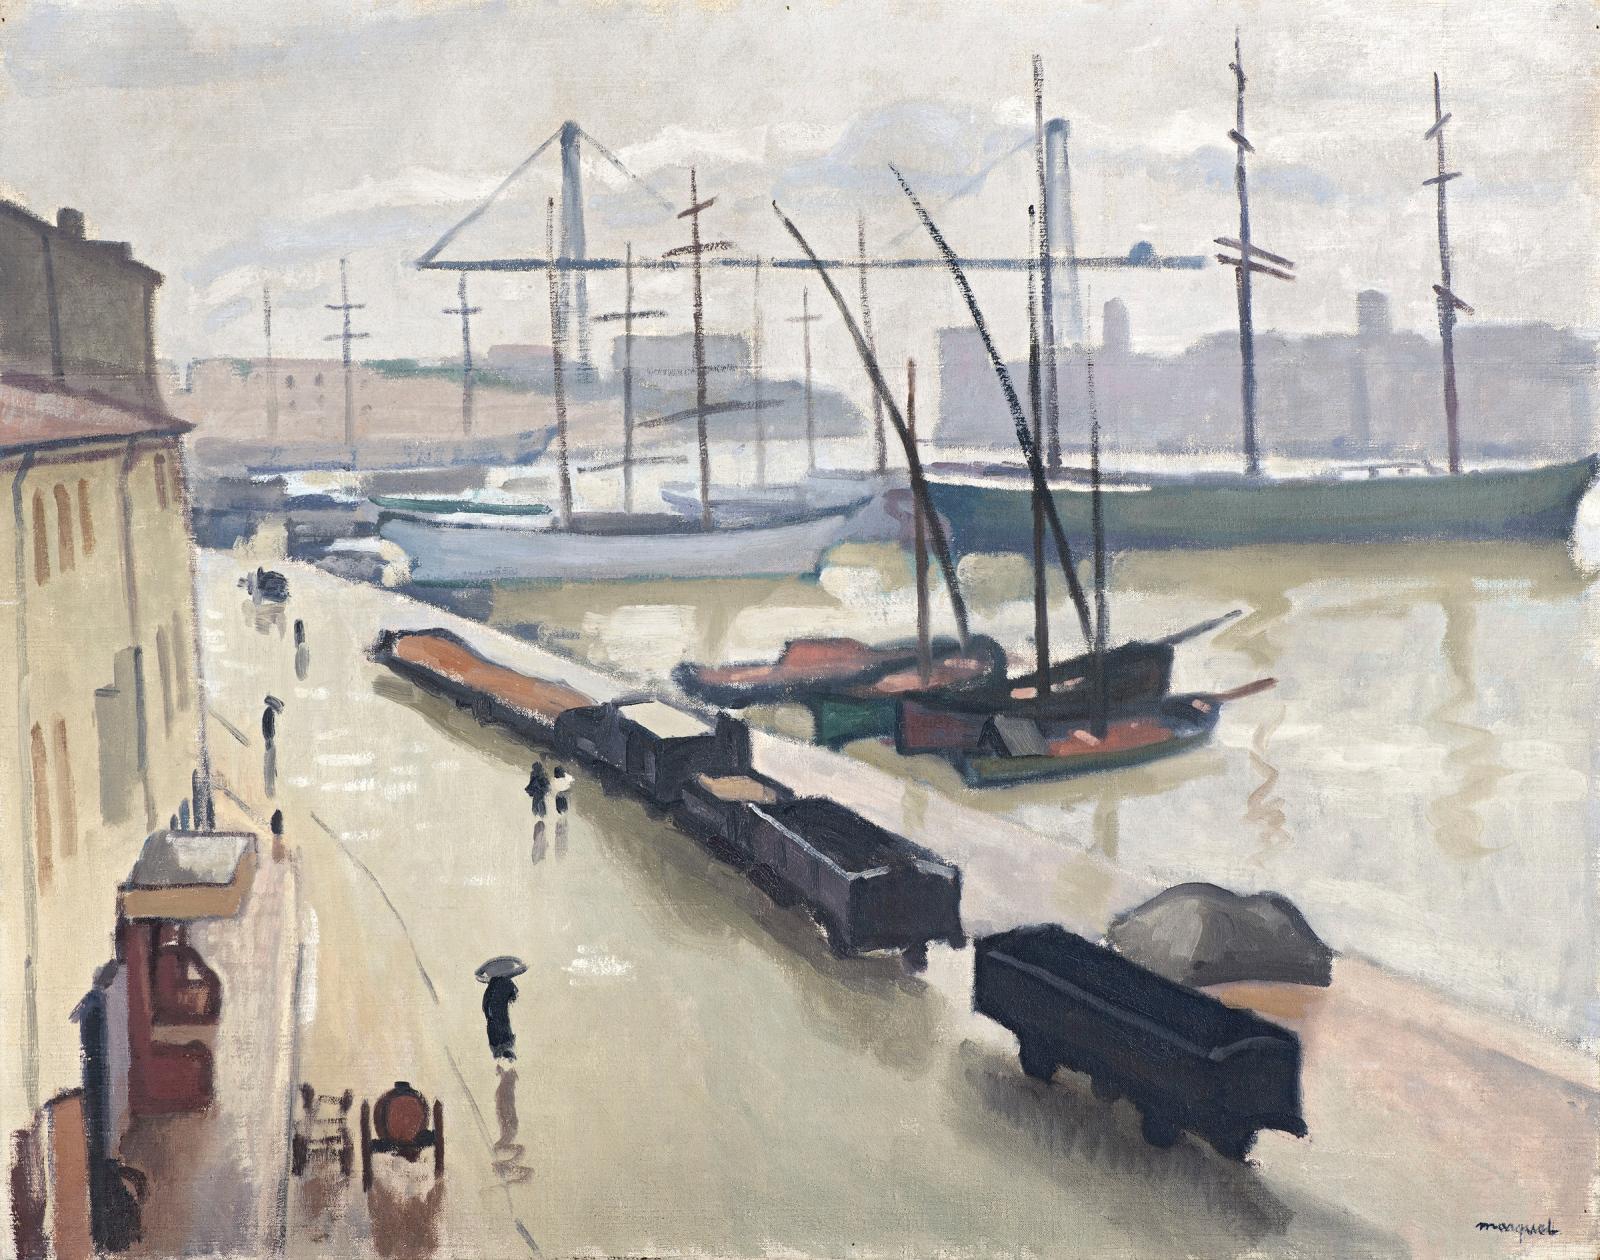 Cette huile sur toile peinte en 1916 par Albert Marquet (1875-1947), Marseille sous la pluie (73 x 92 cm), sera présentée lors de la prochaine Brafa à